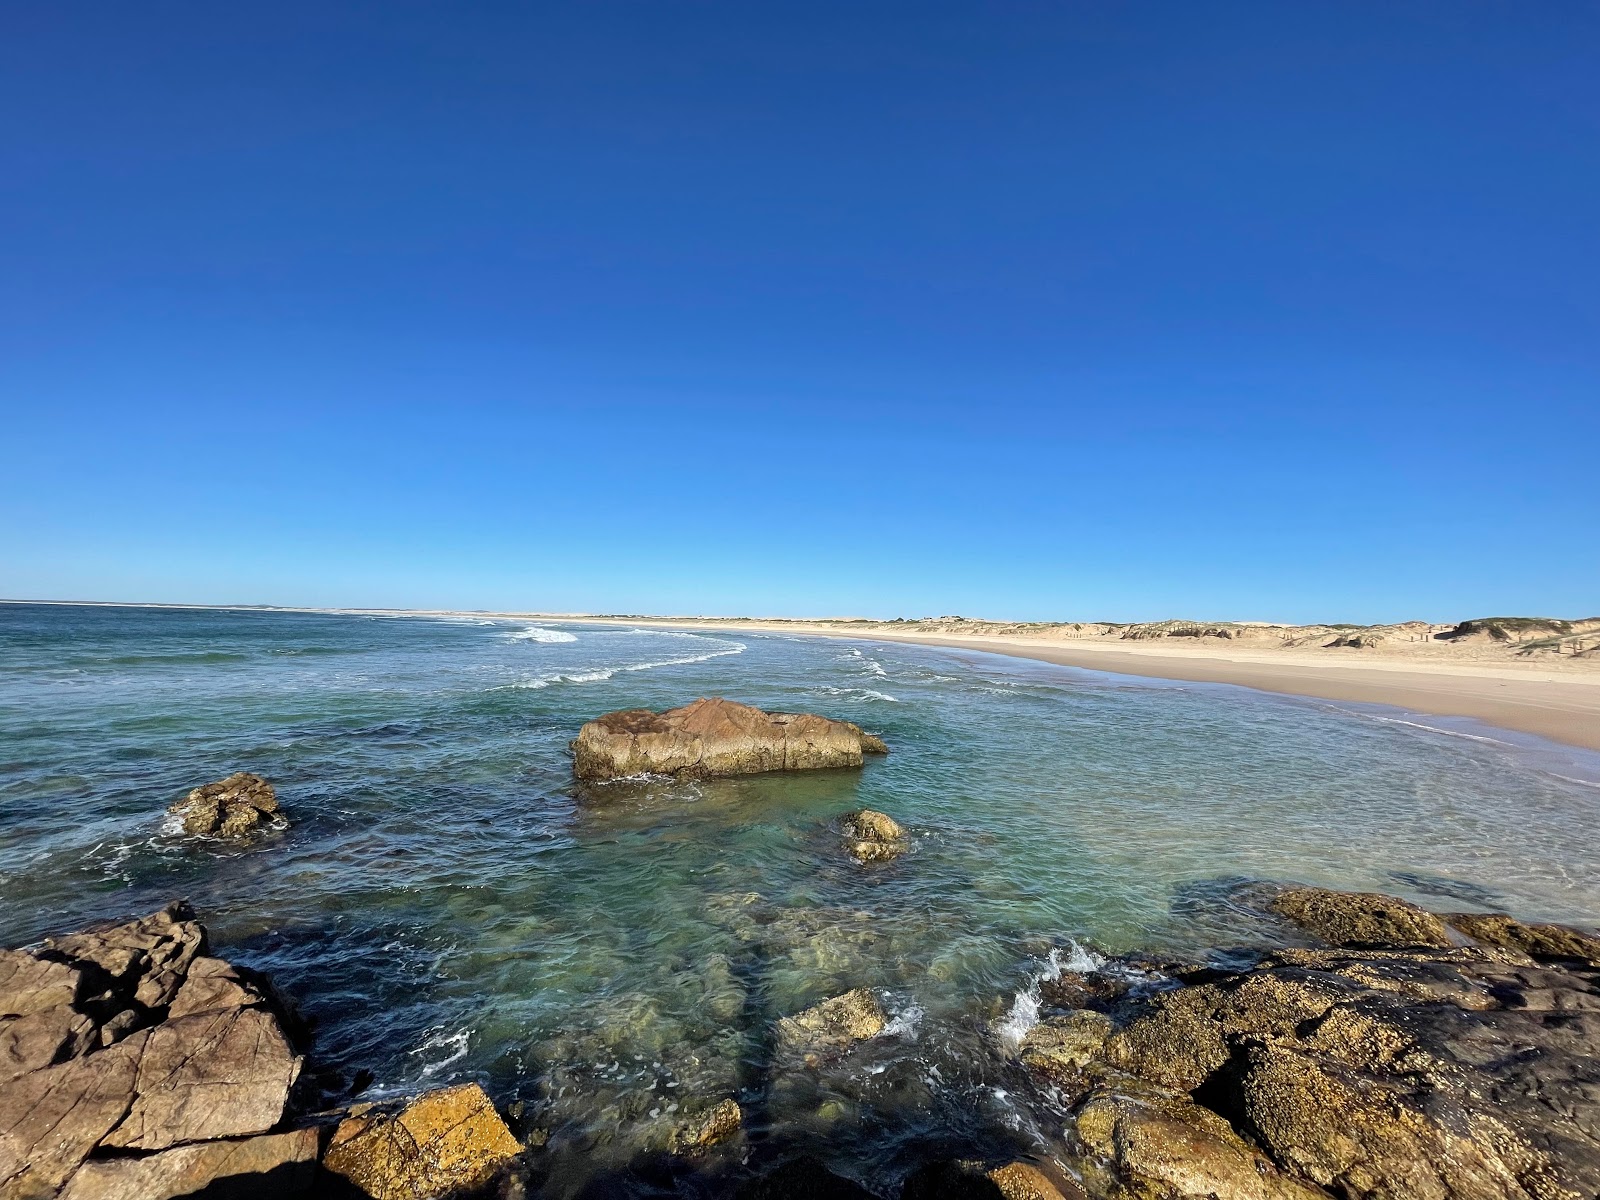 Zdjęcie Wanderrabah Beach z powierzchnią jasny piasek